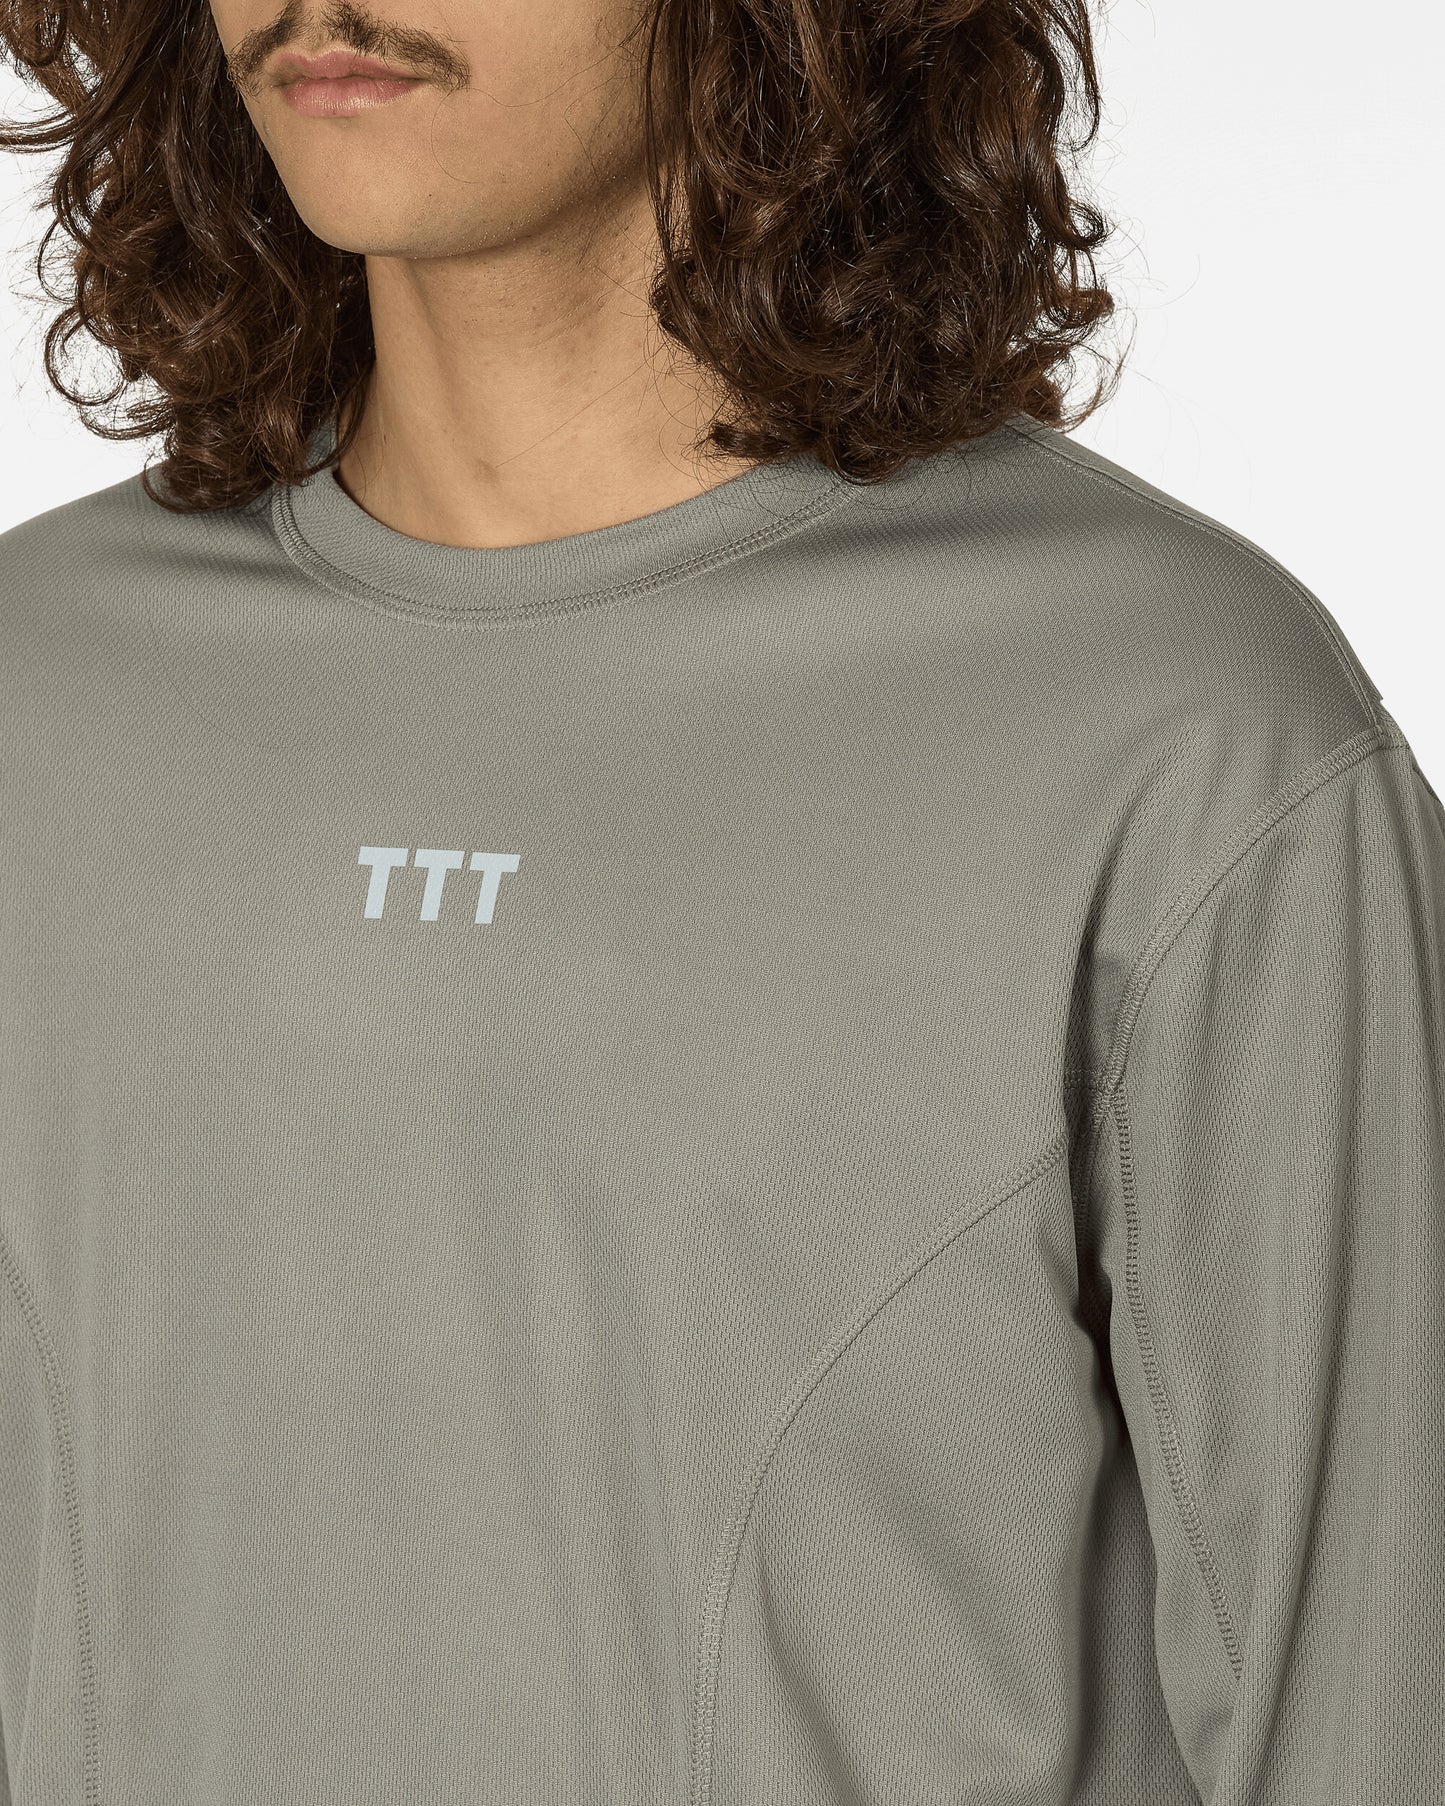 The Trilogy Tapes Ttt Longsleeve Running Top Grey T-Shirts Longsleeve TTT11LS001 001